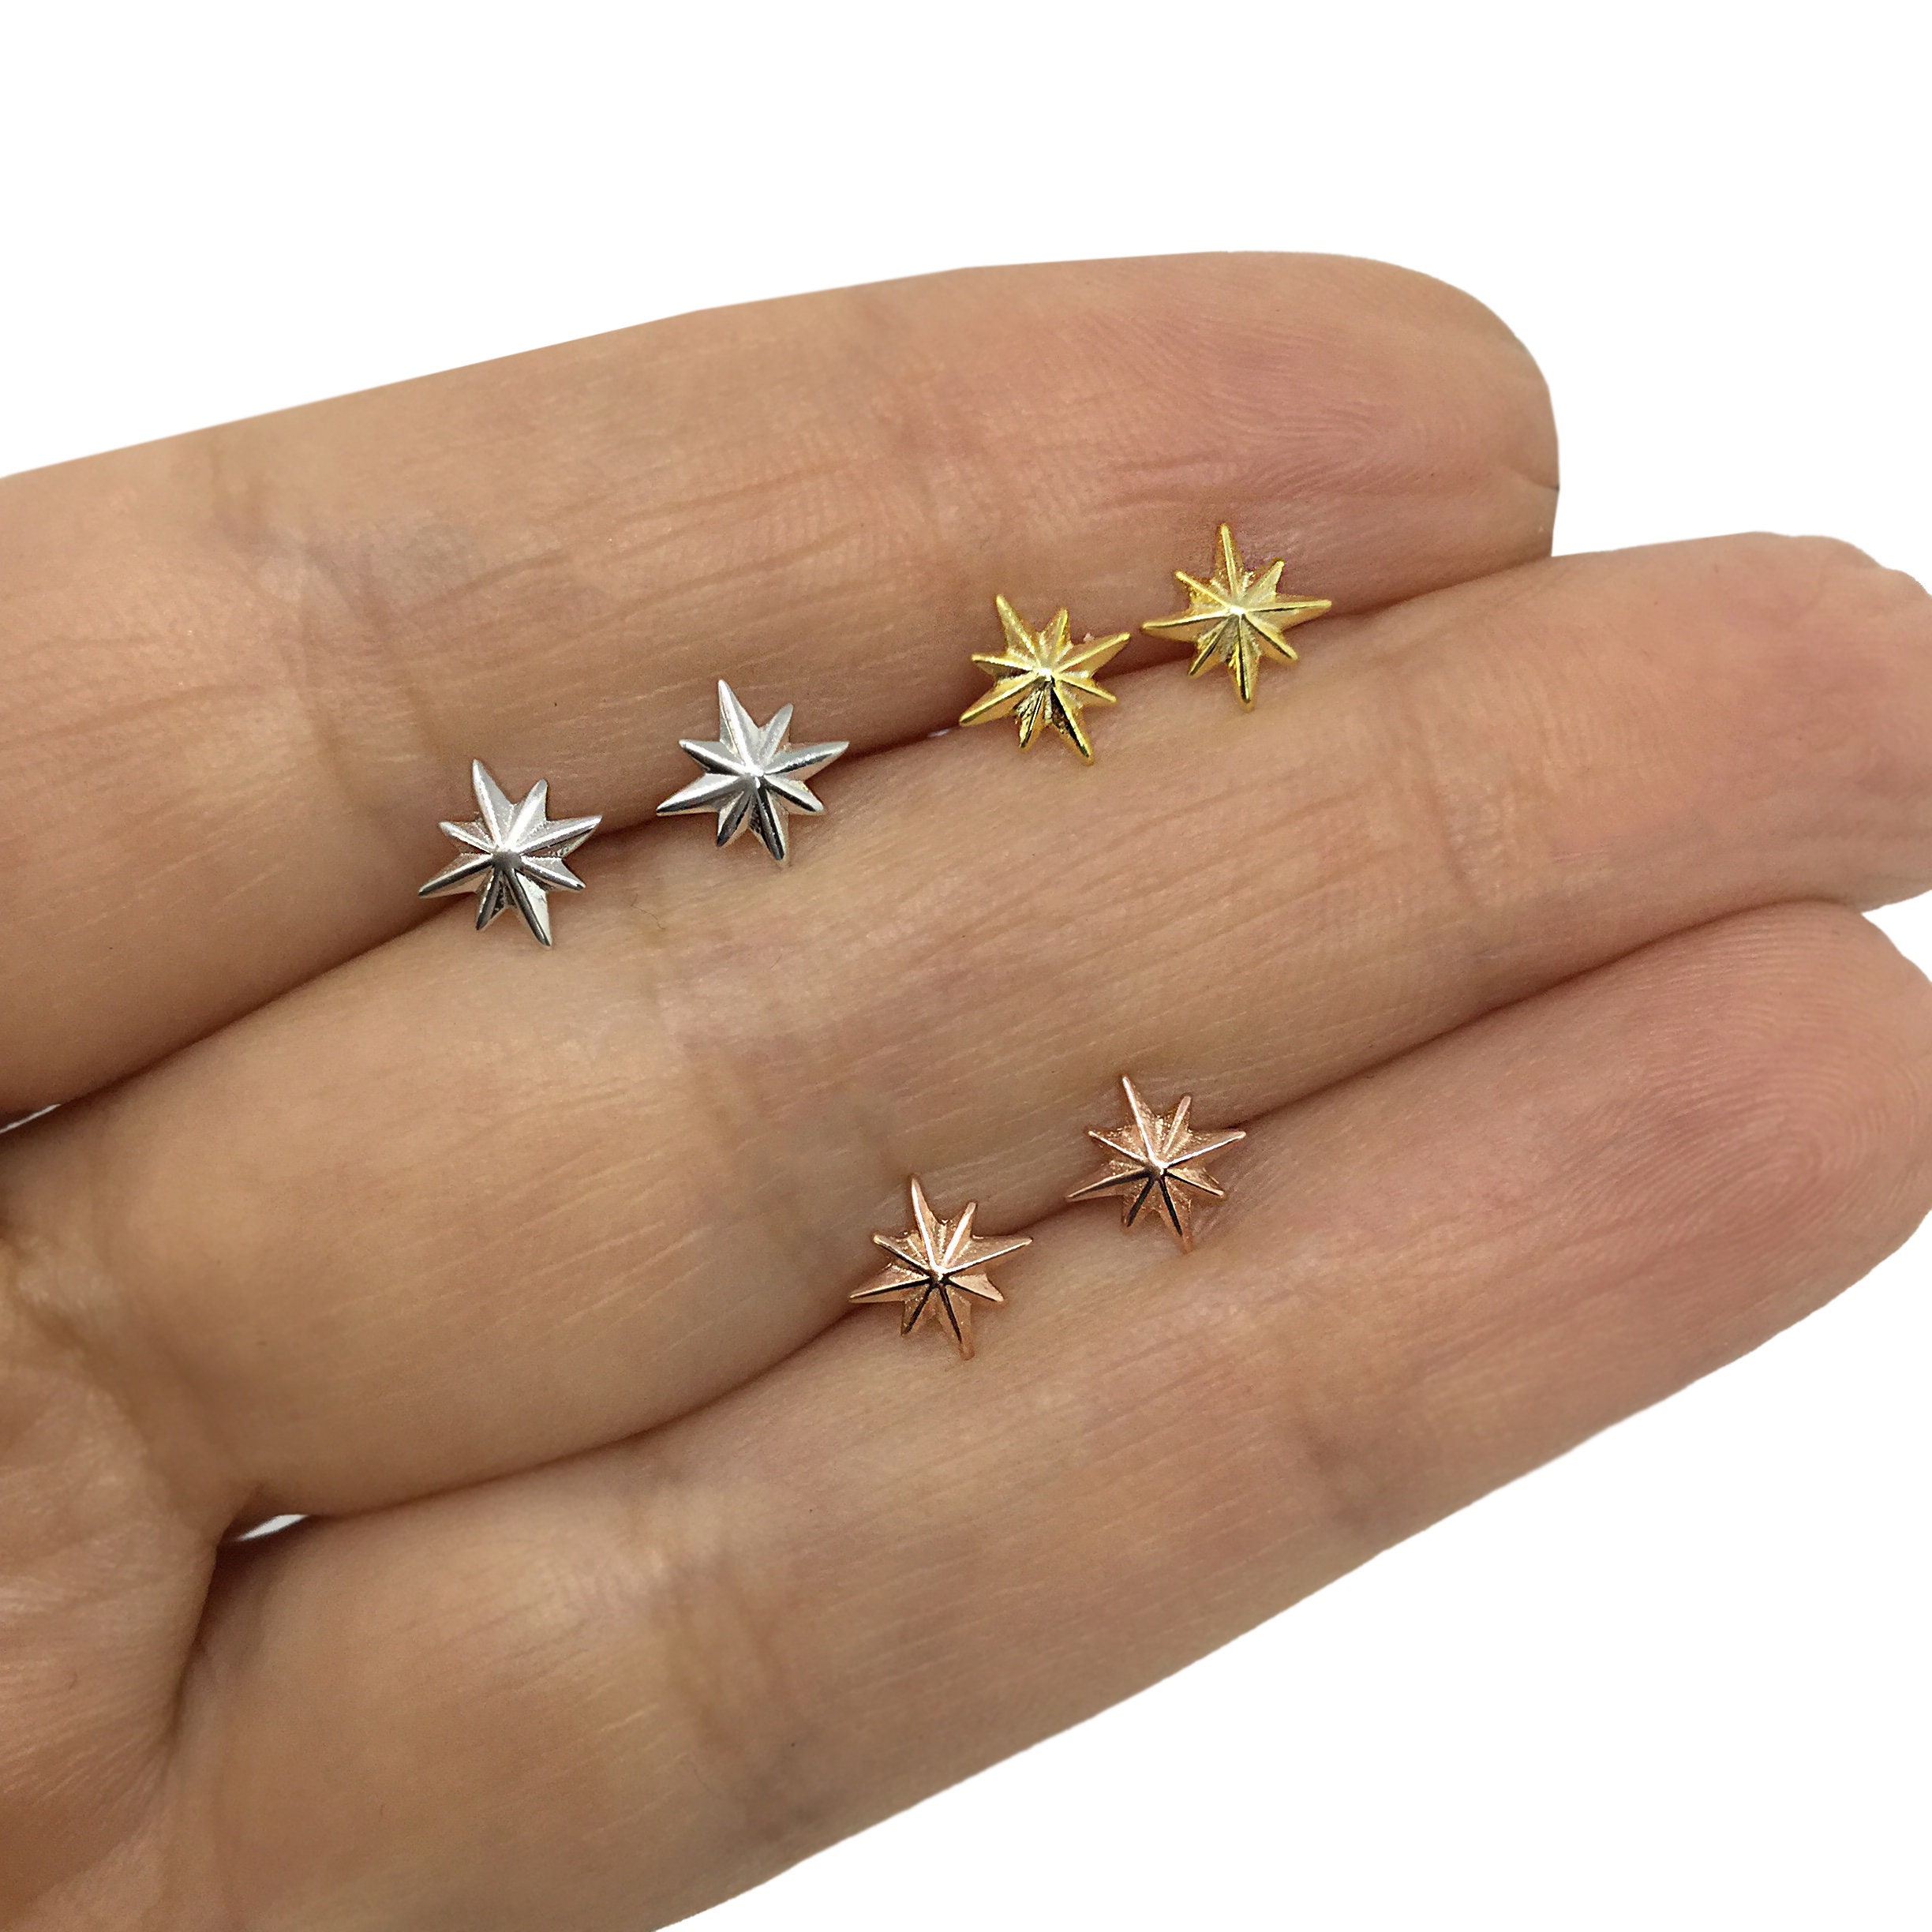 9ct Gold Star Hoop Earrings | Posh Totty Designs